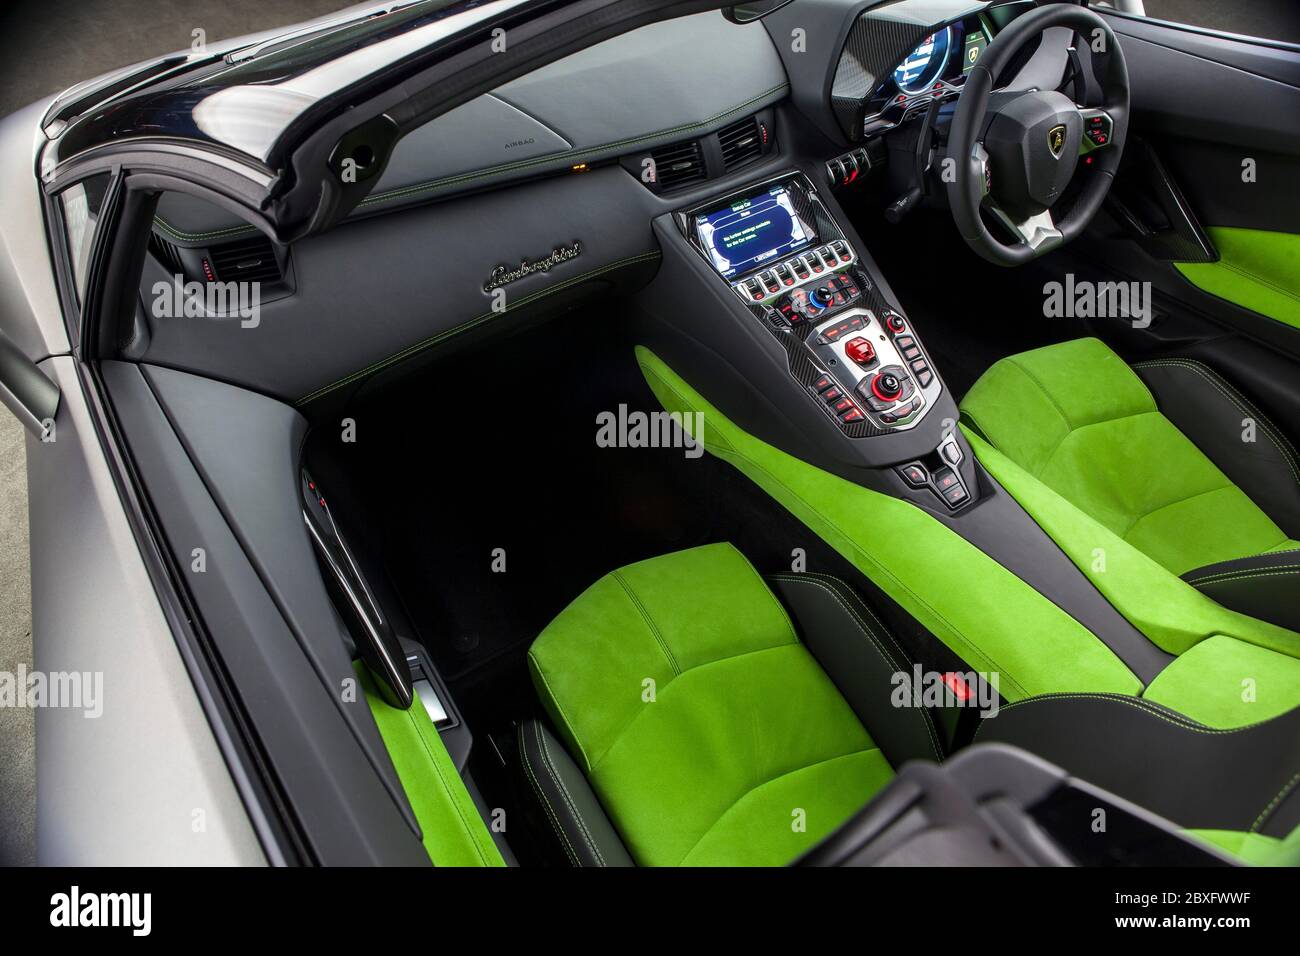 Lamborghini Aventador interior Stock Photo - Alamy